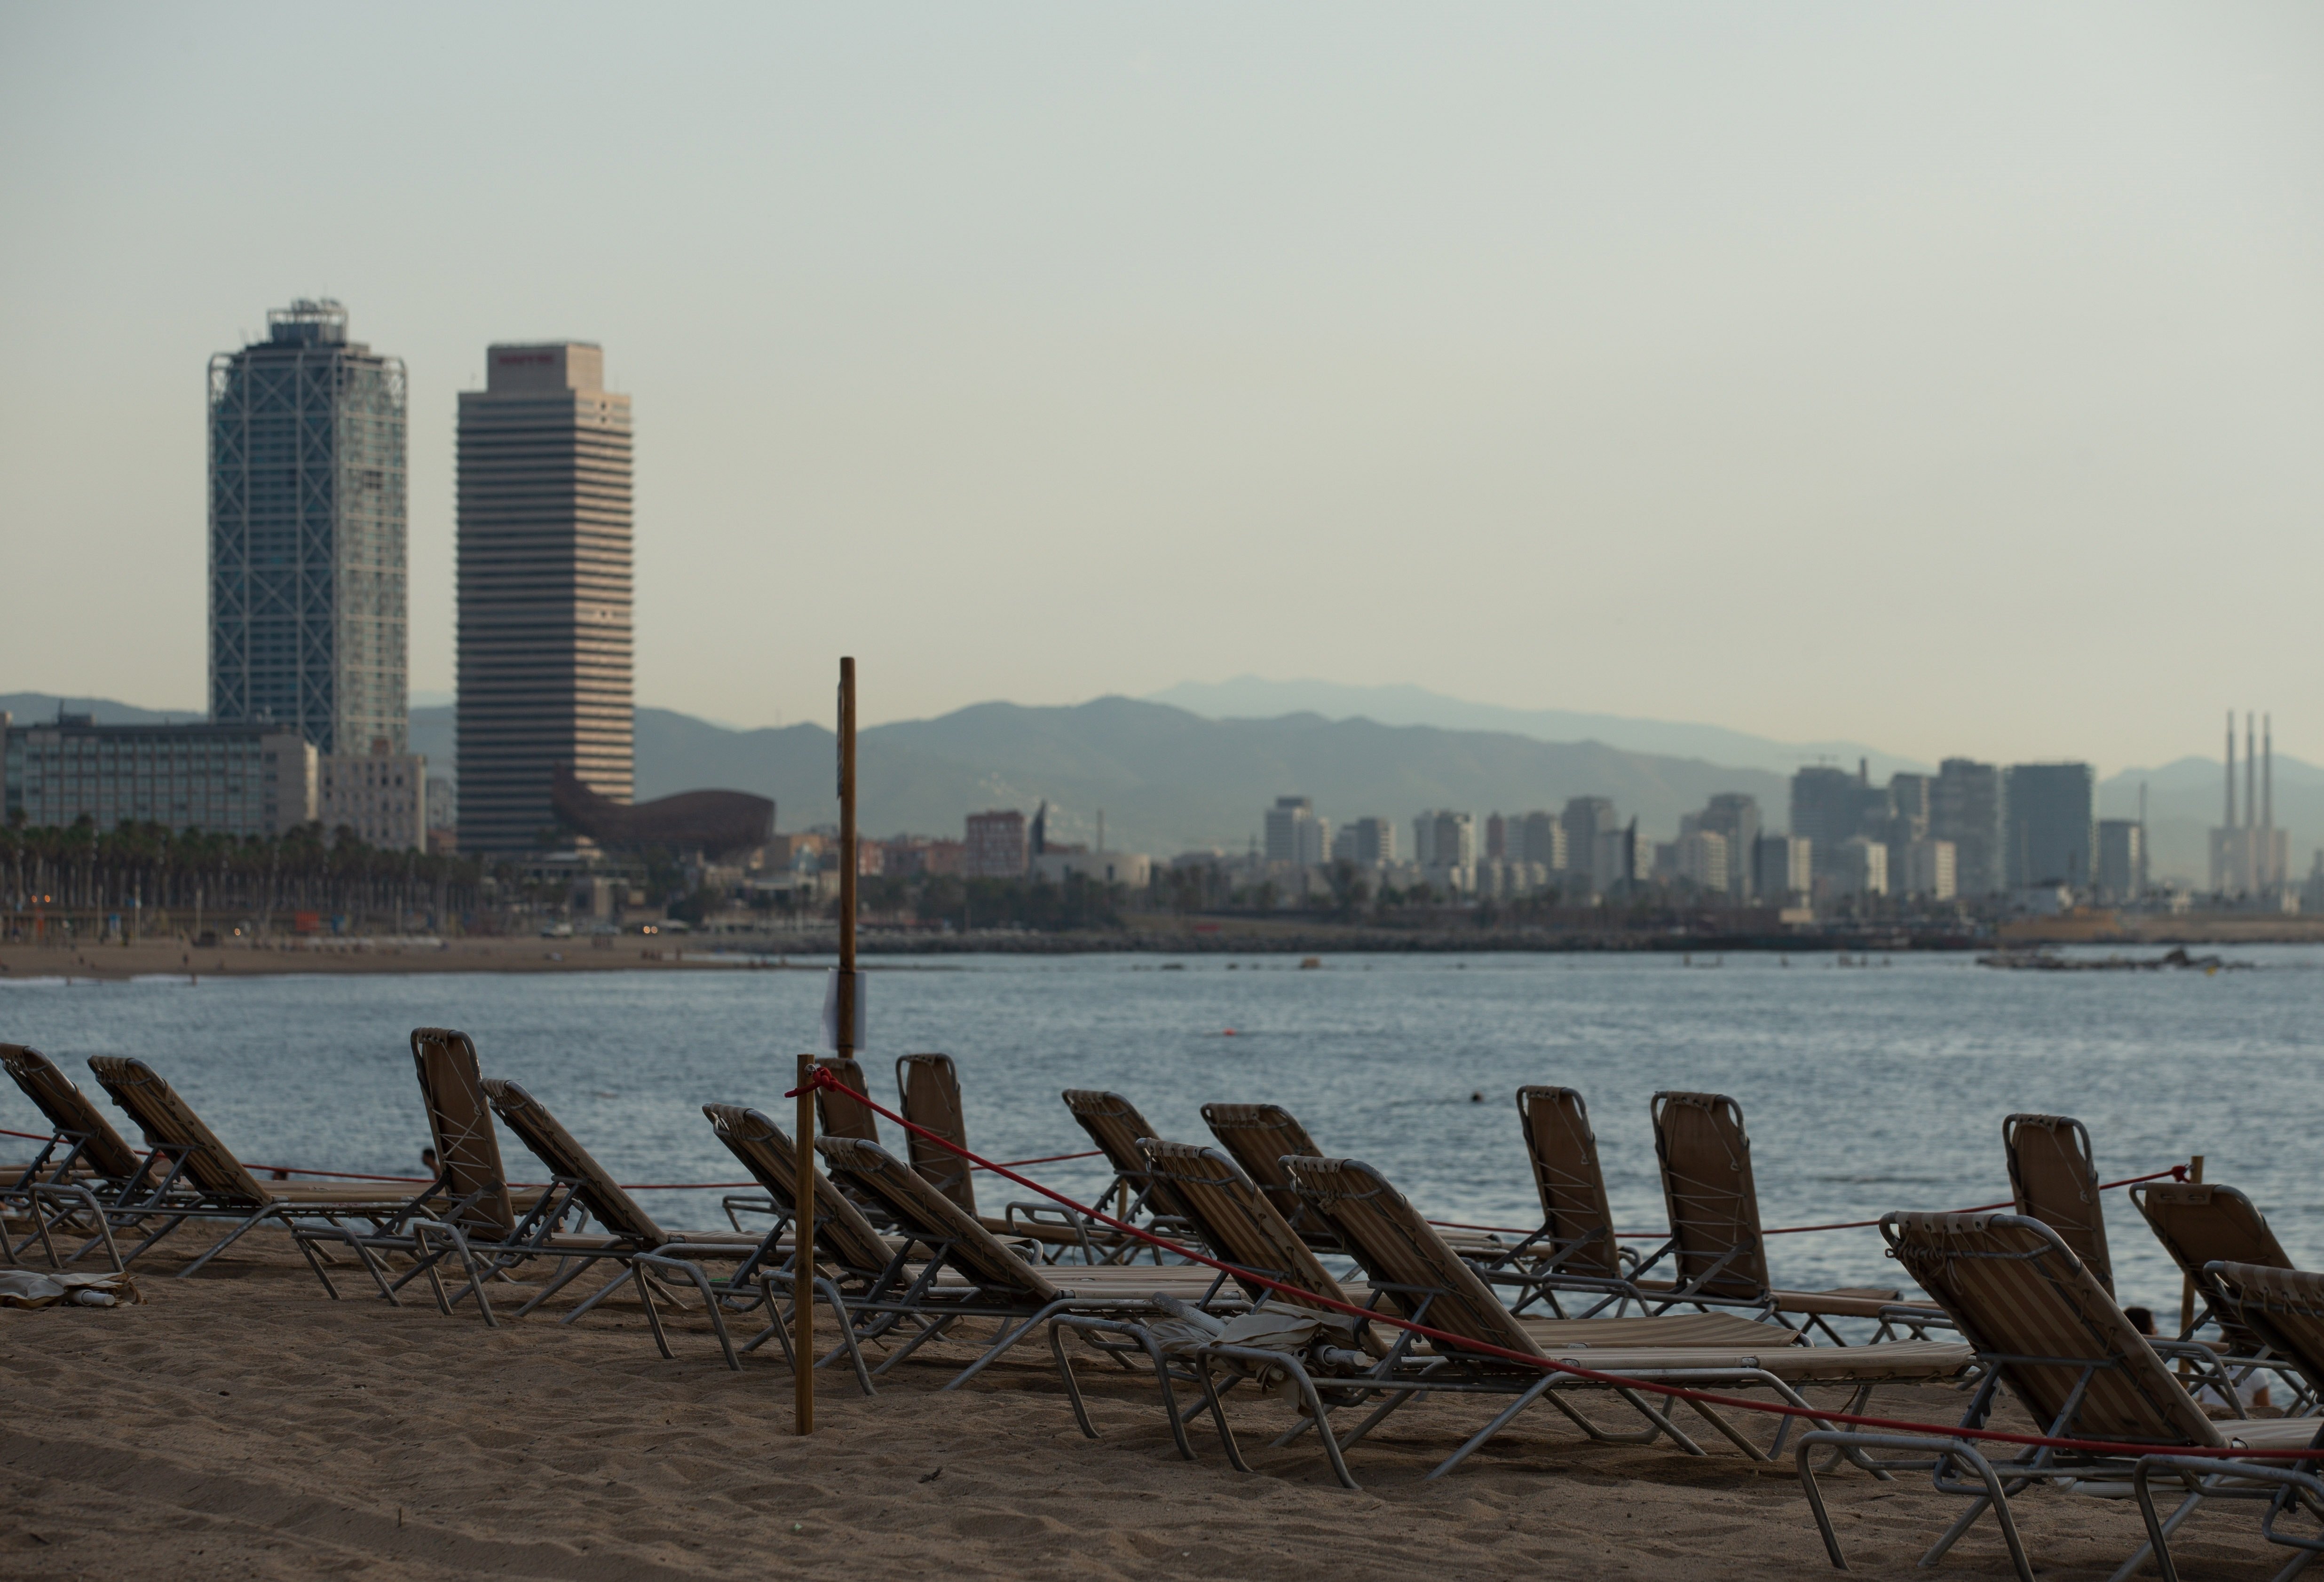 Barcelona cerrará algunas playas en verano si el Estado no pone arena